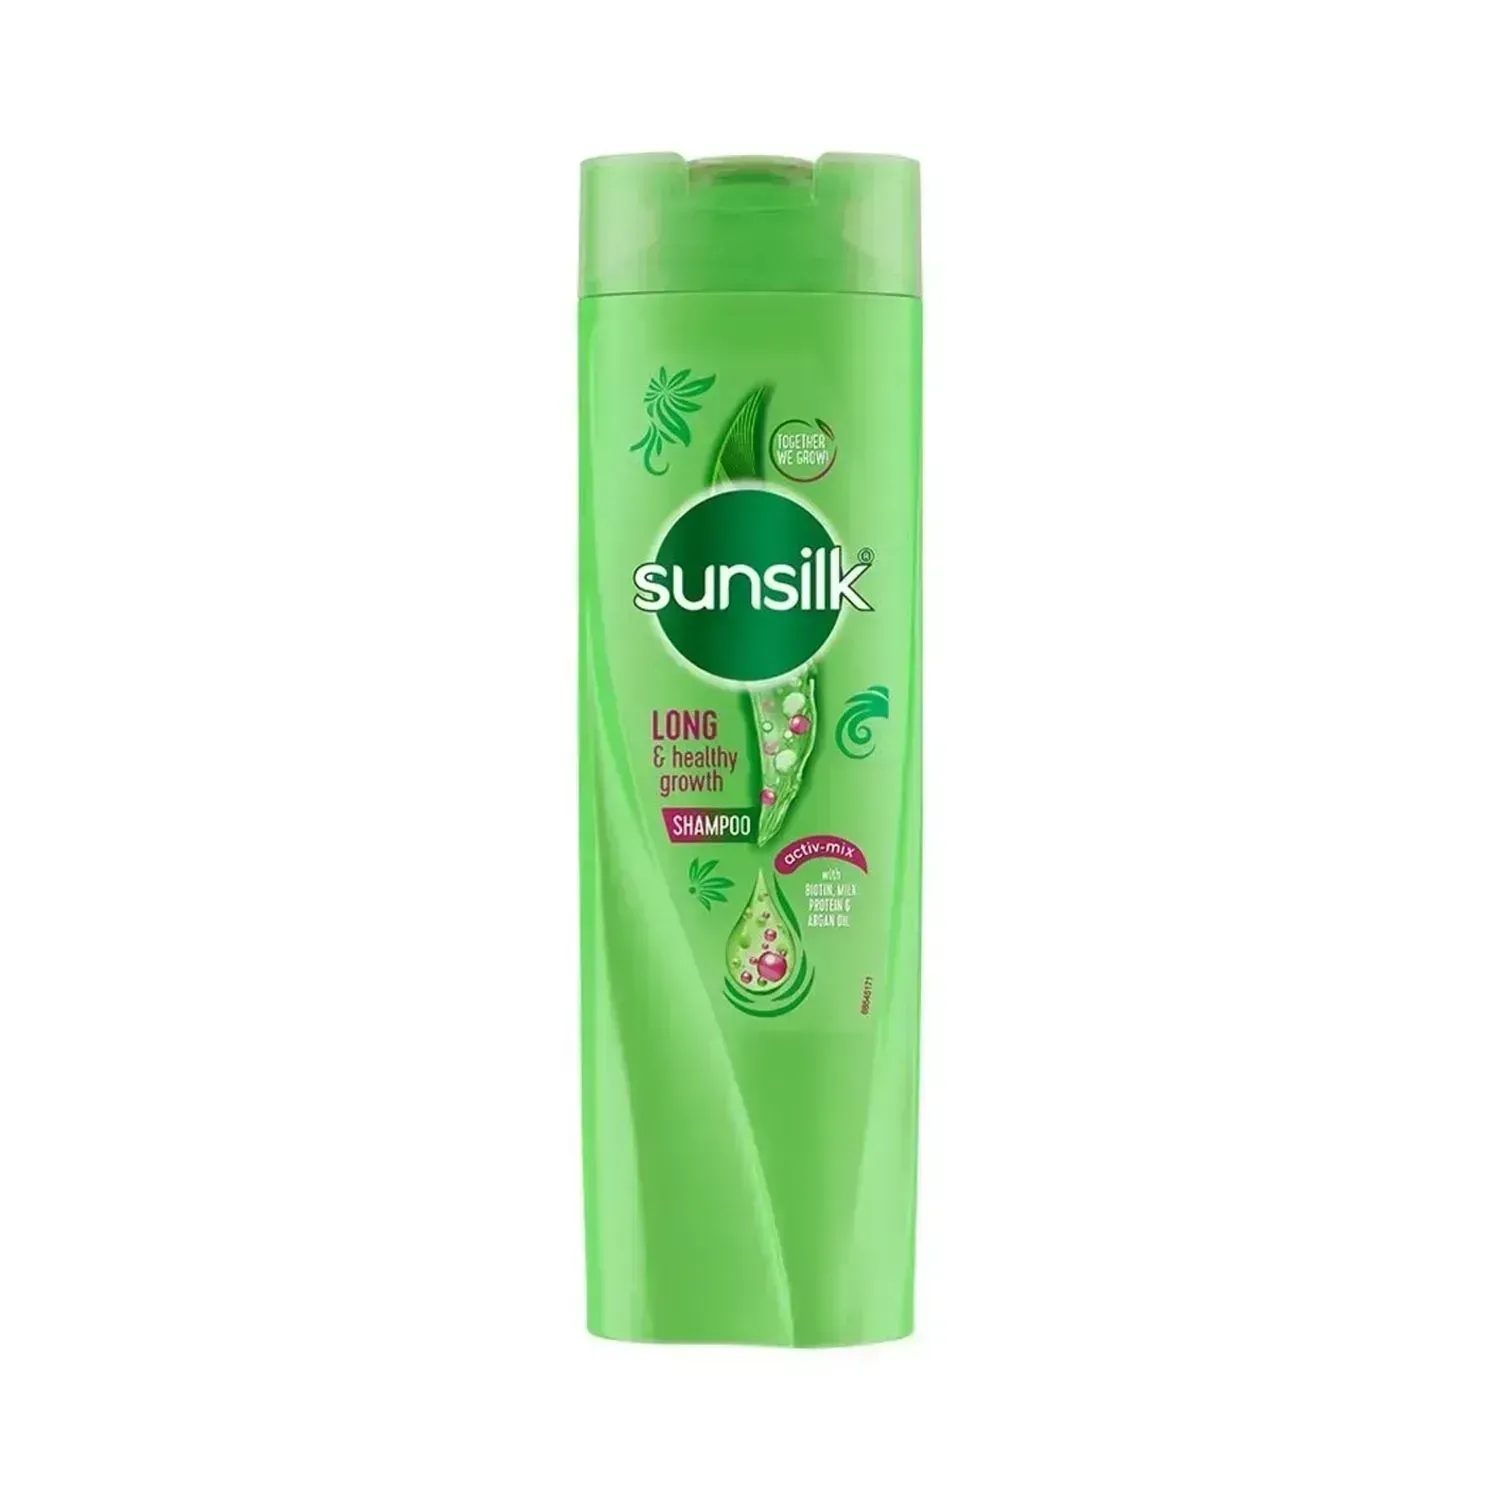 Sunsilk | Sunsilk Long & Healthy Growth Shampoo - (360ml)